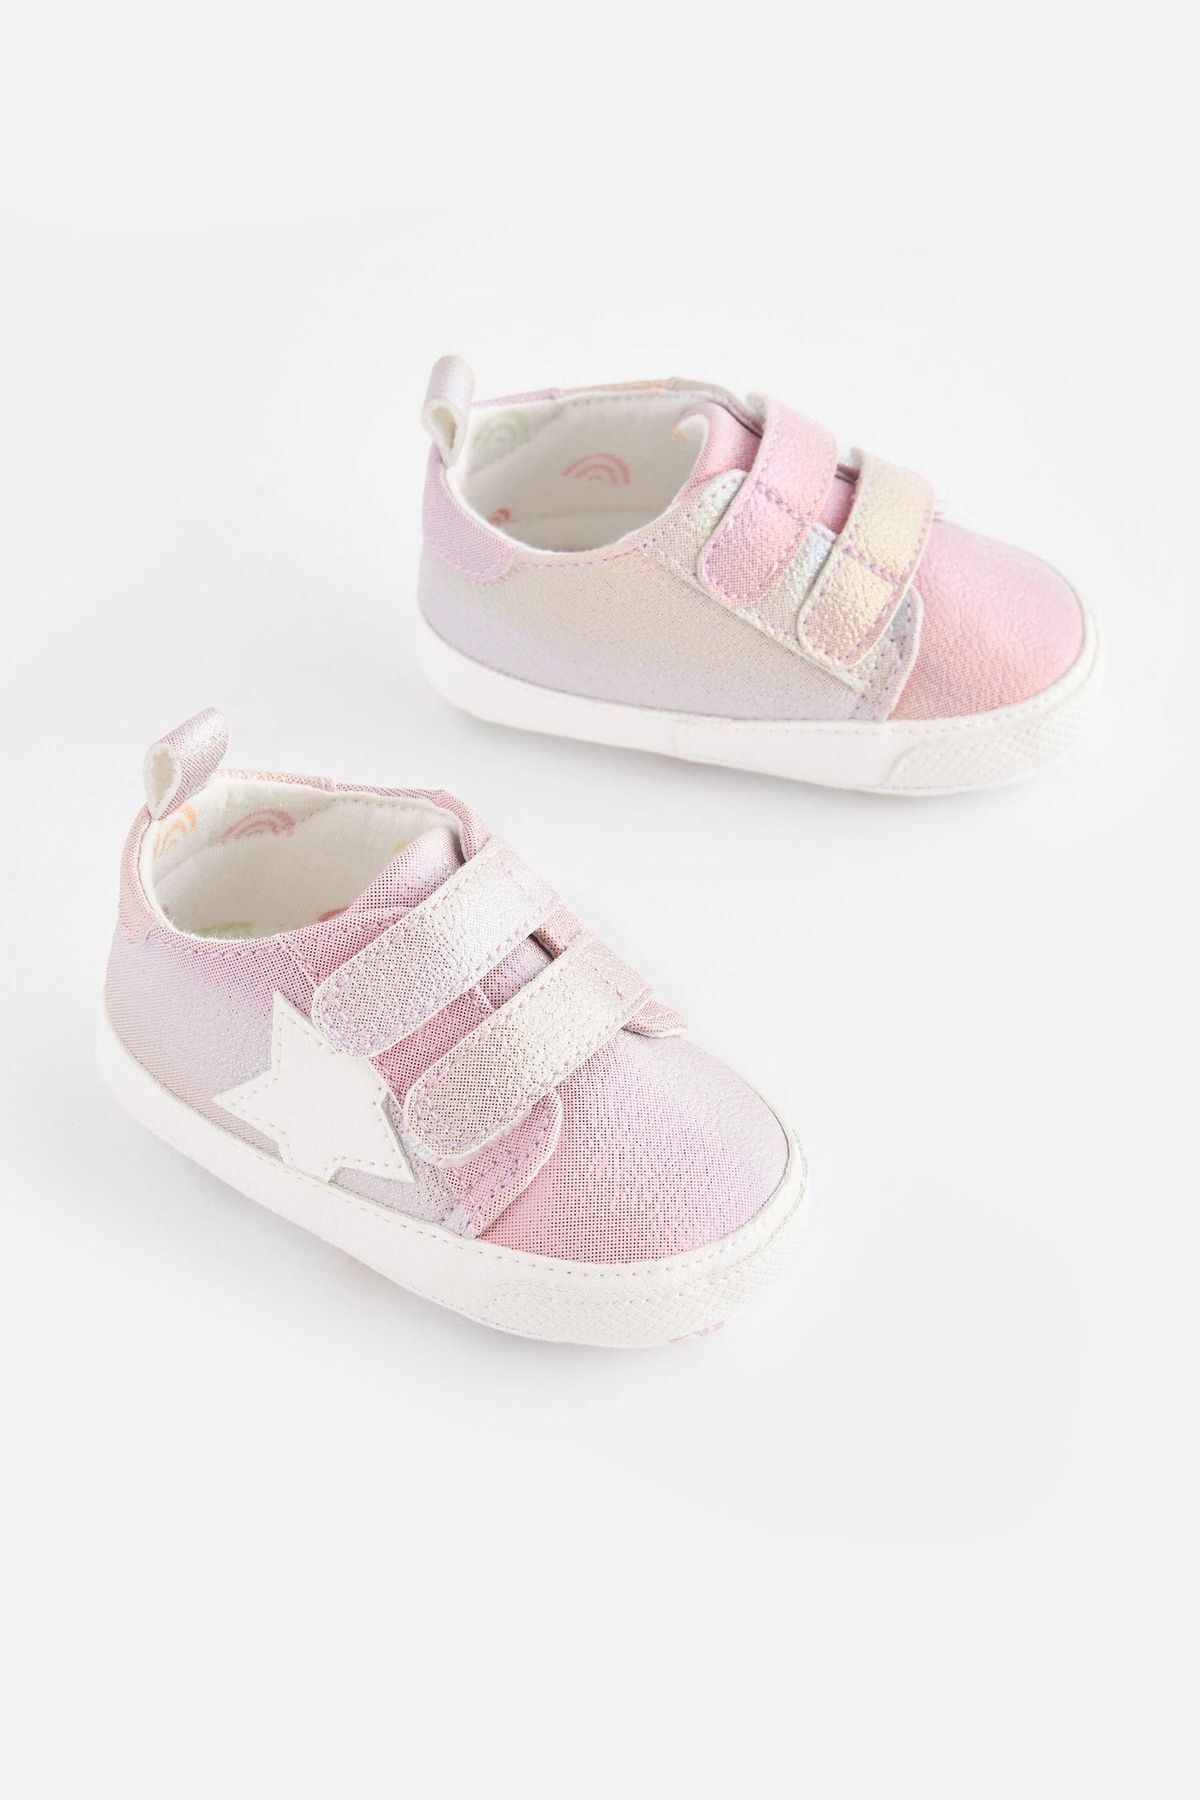 Next Baby Pembe Yıldız Desenli Simli Yumuşak Taban Bantlı Bebek Spor Ayakkabı